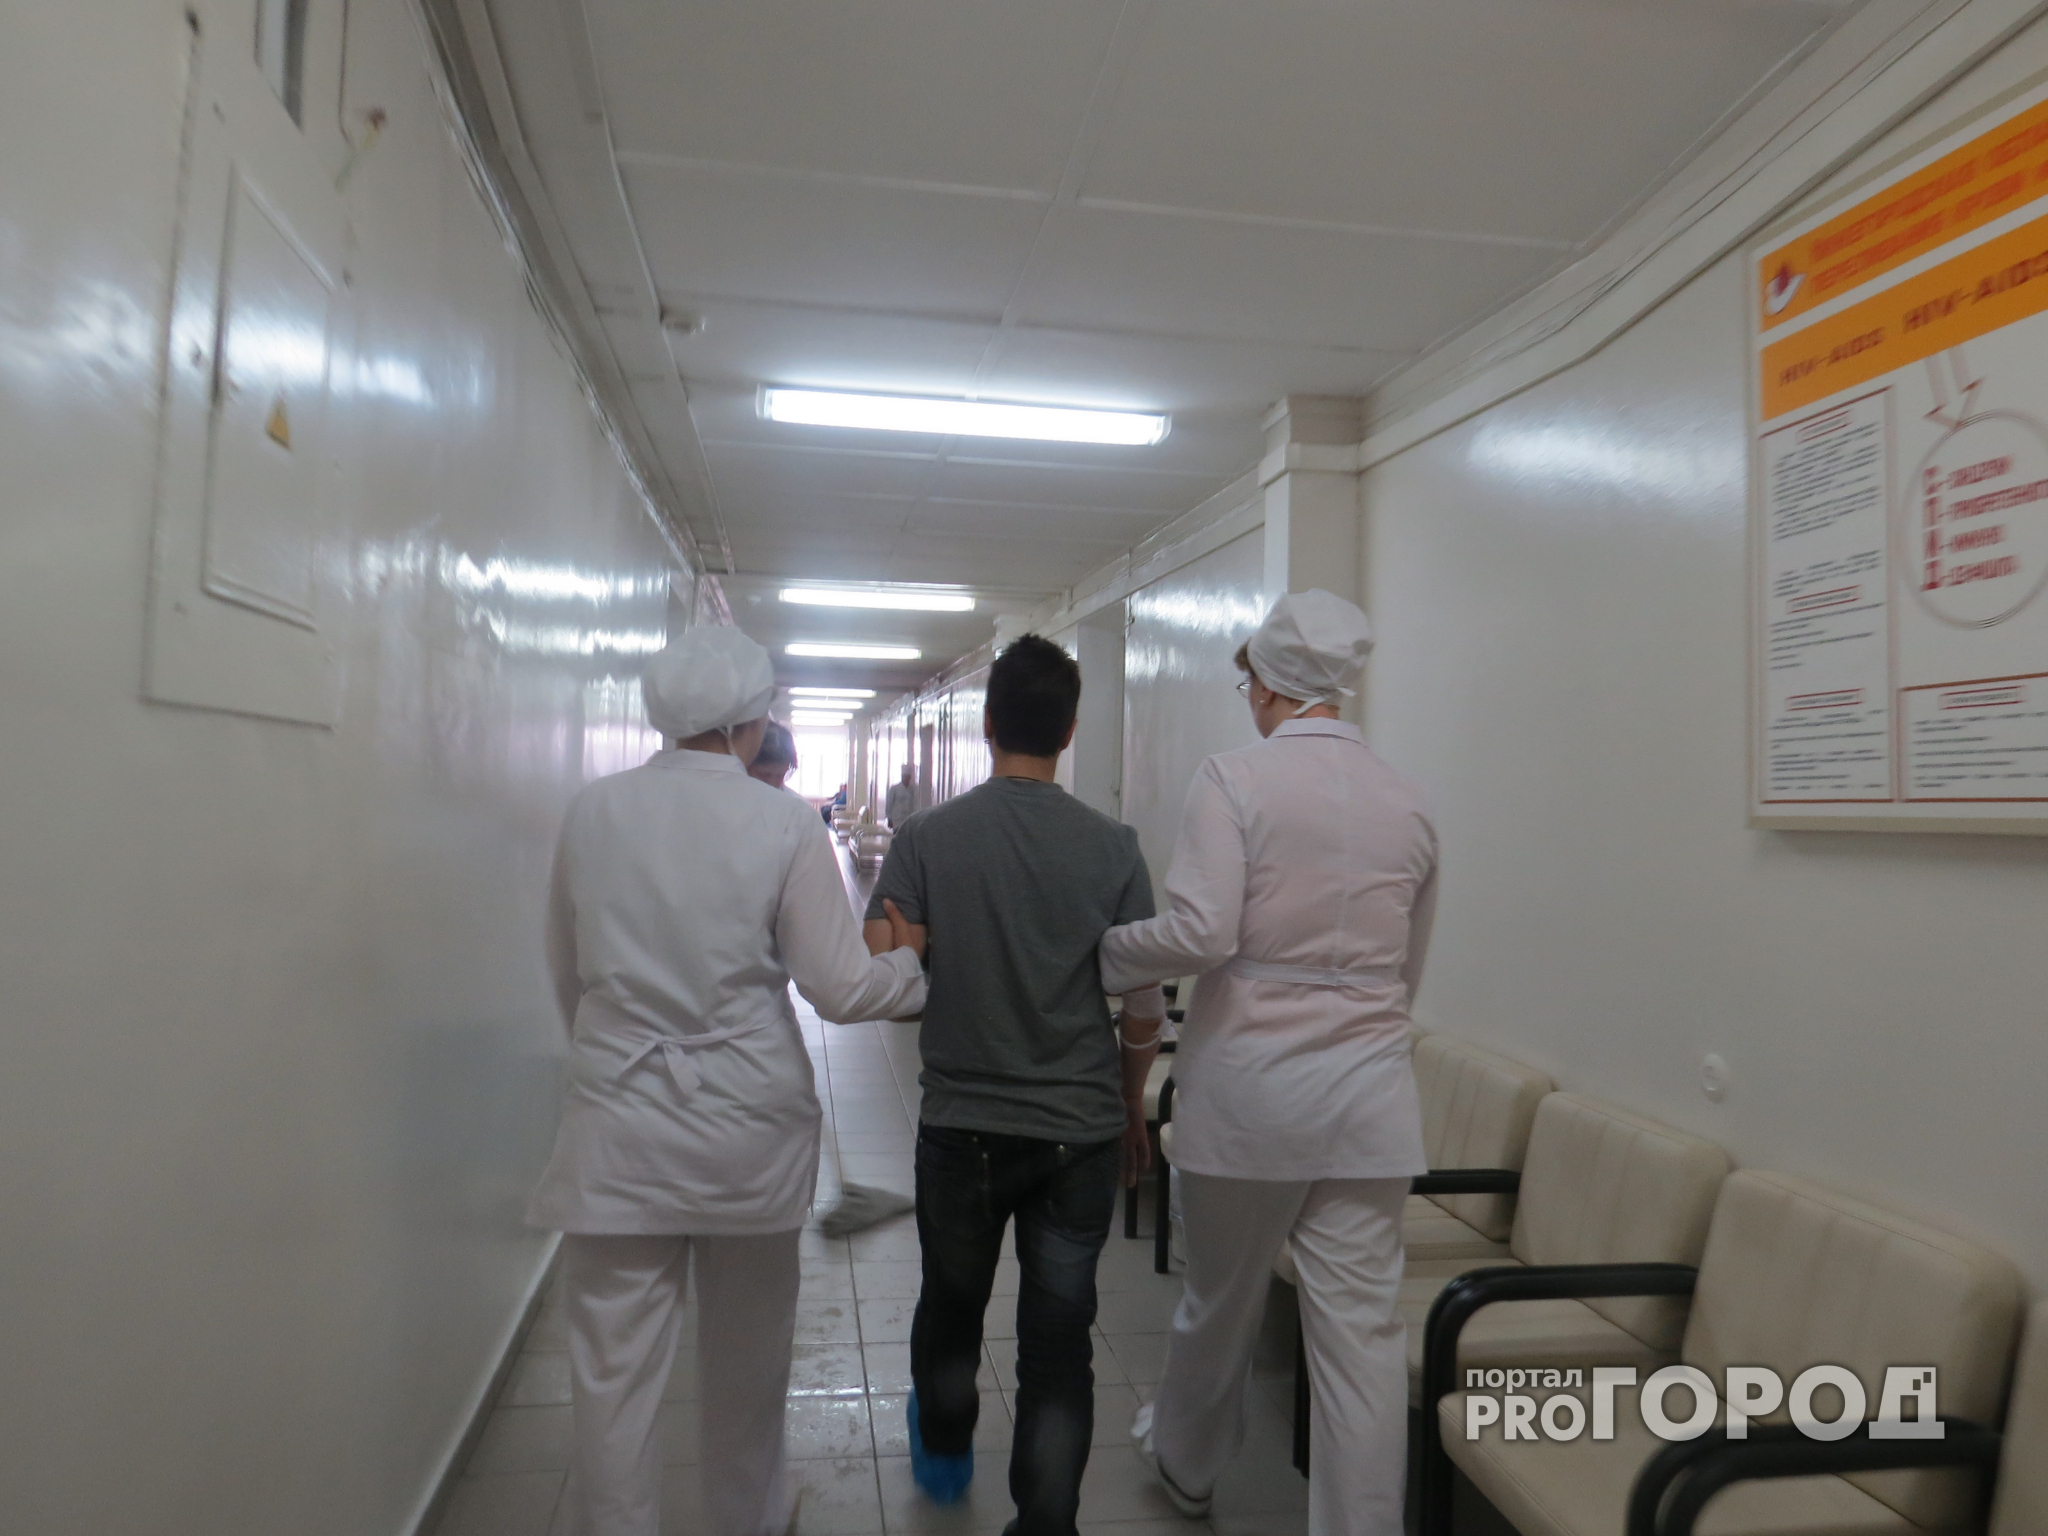 Санитар психбольницы в Ганино: "Пациент напал на меня с табуреткой "